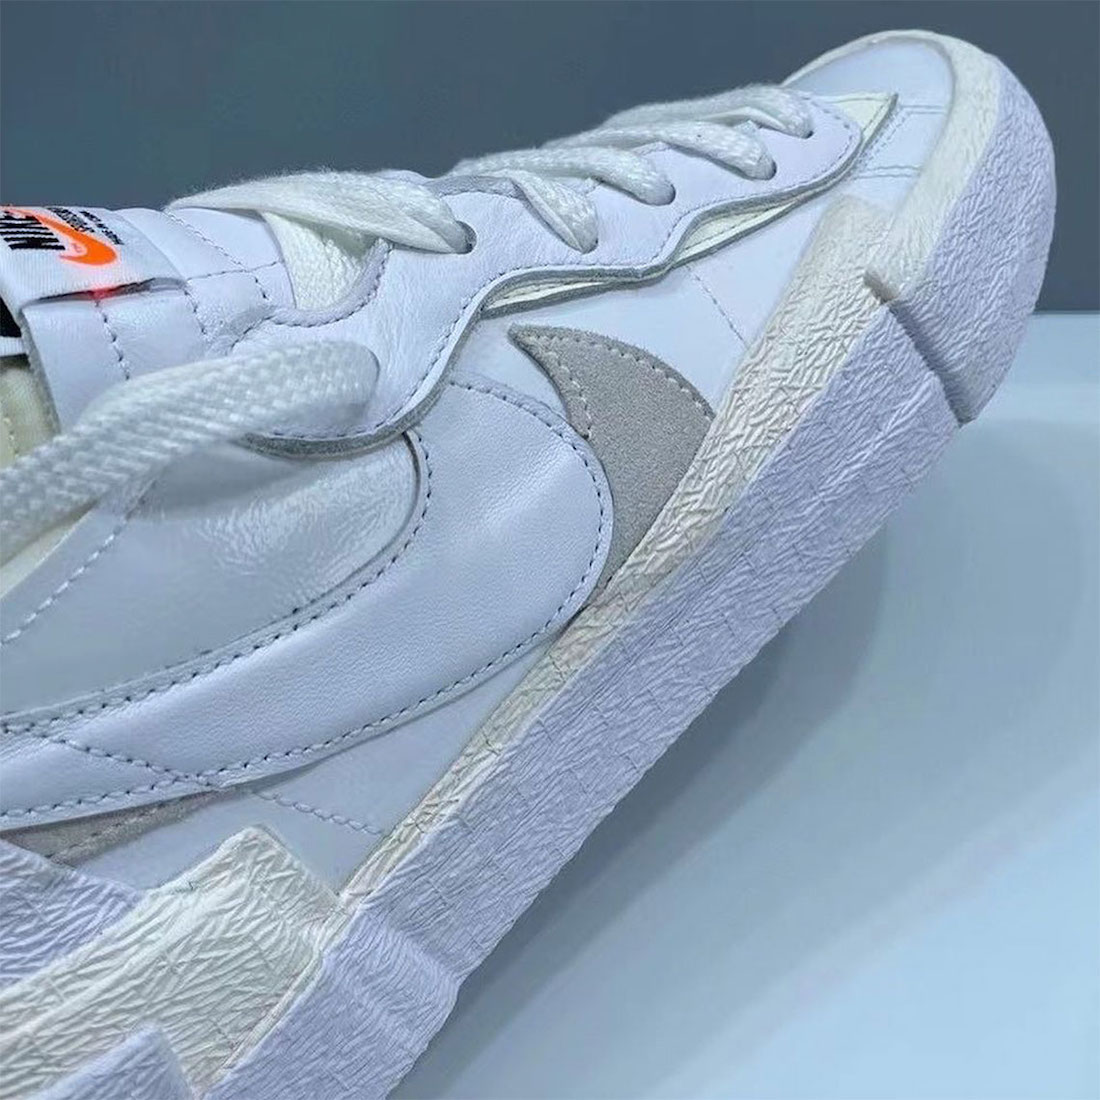 Sacai Nike Blazer Low White Grey DM6443-100 Release Date Info